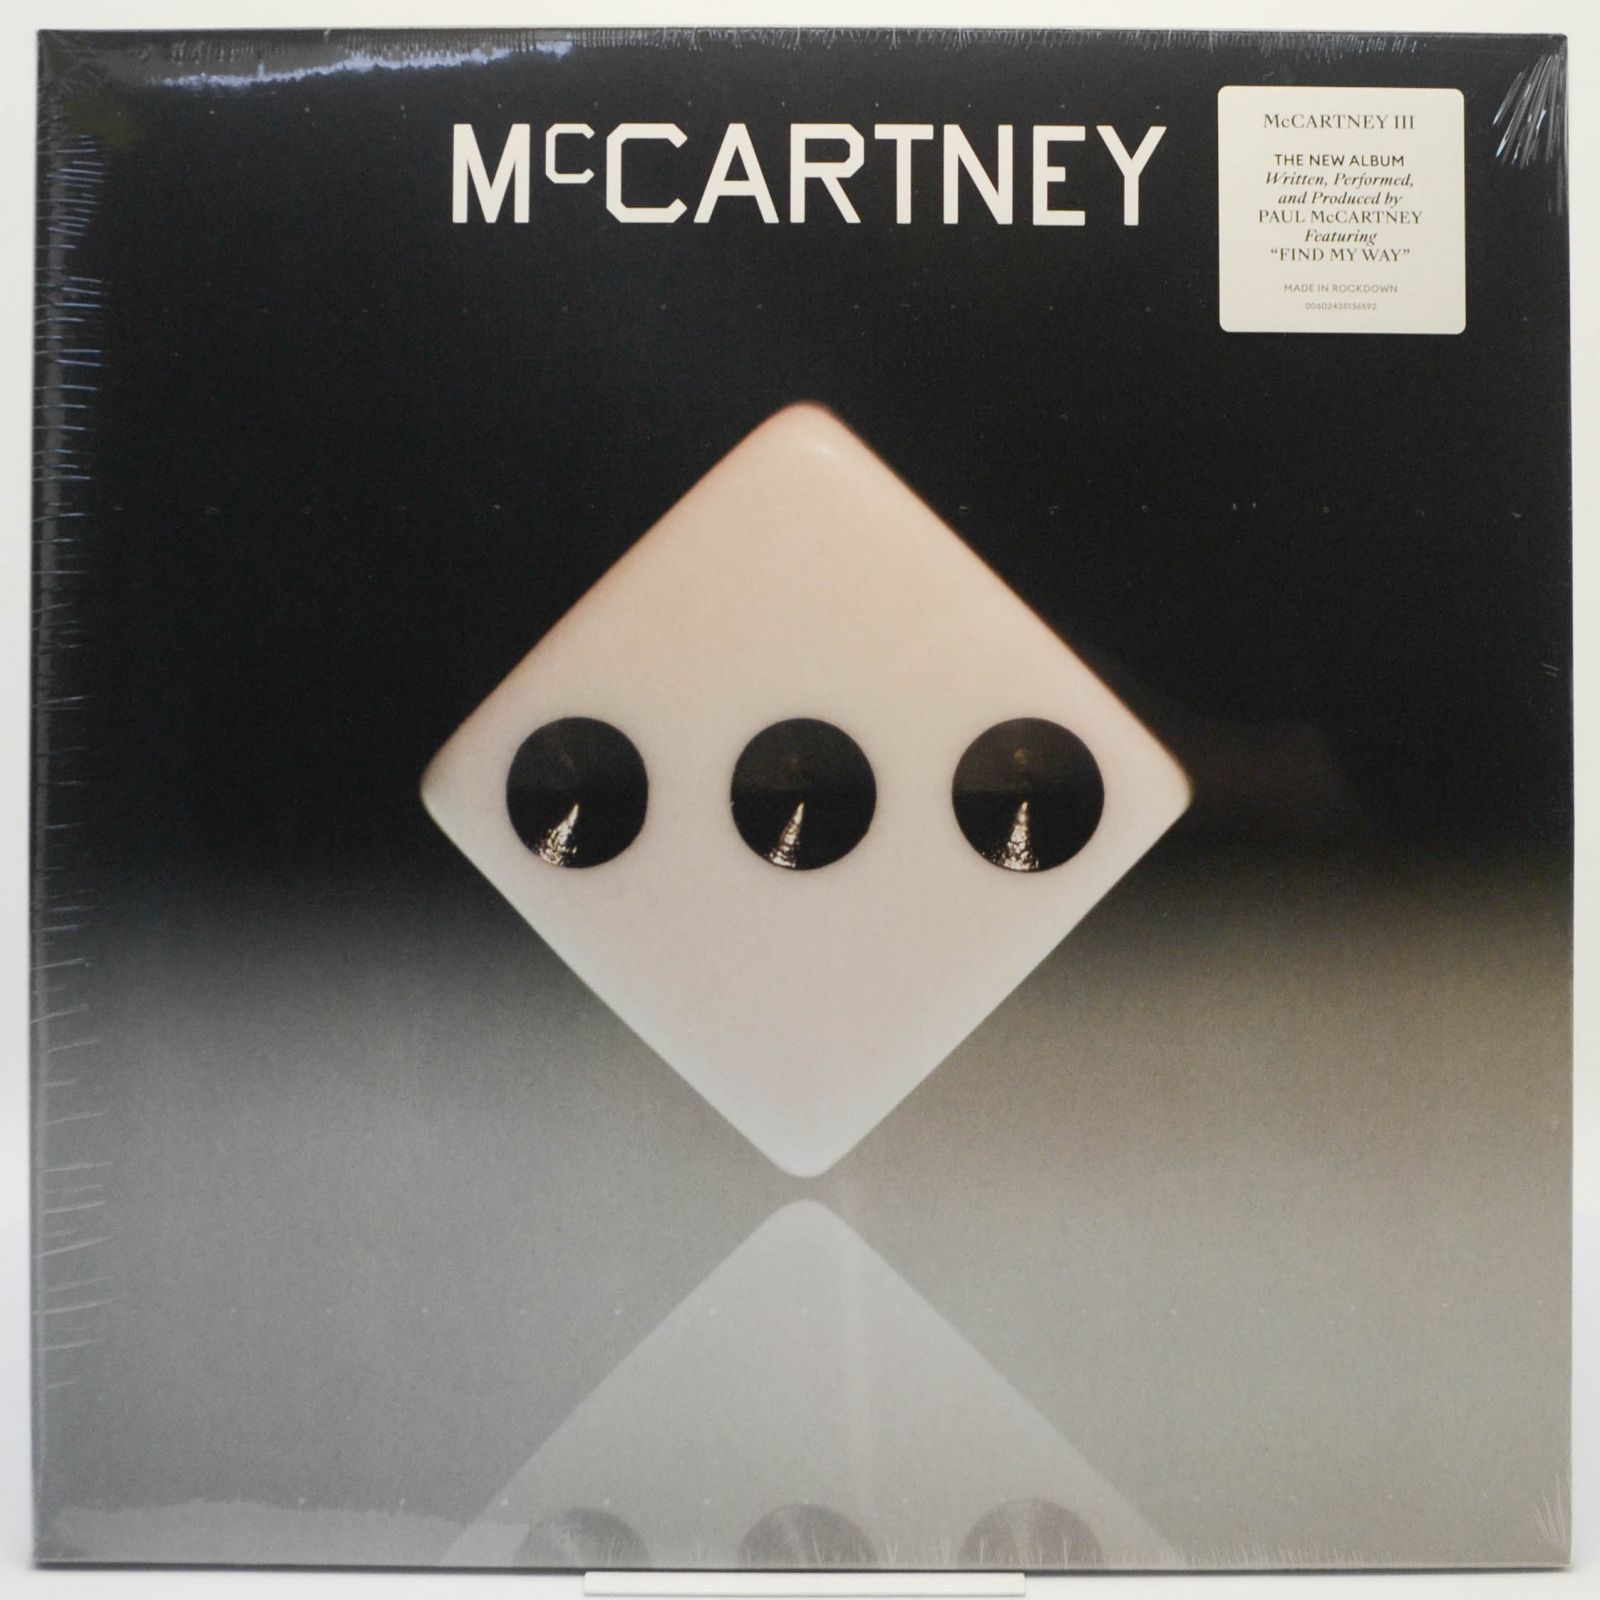 Paul McCartney — Paul McCartney, 2020